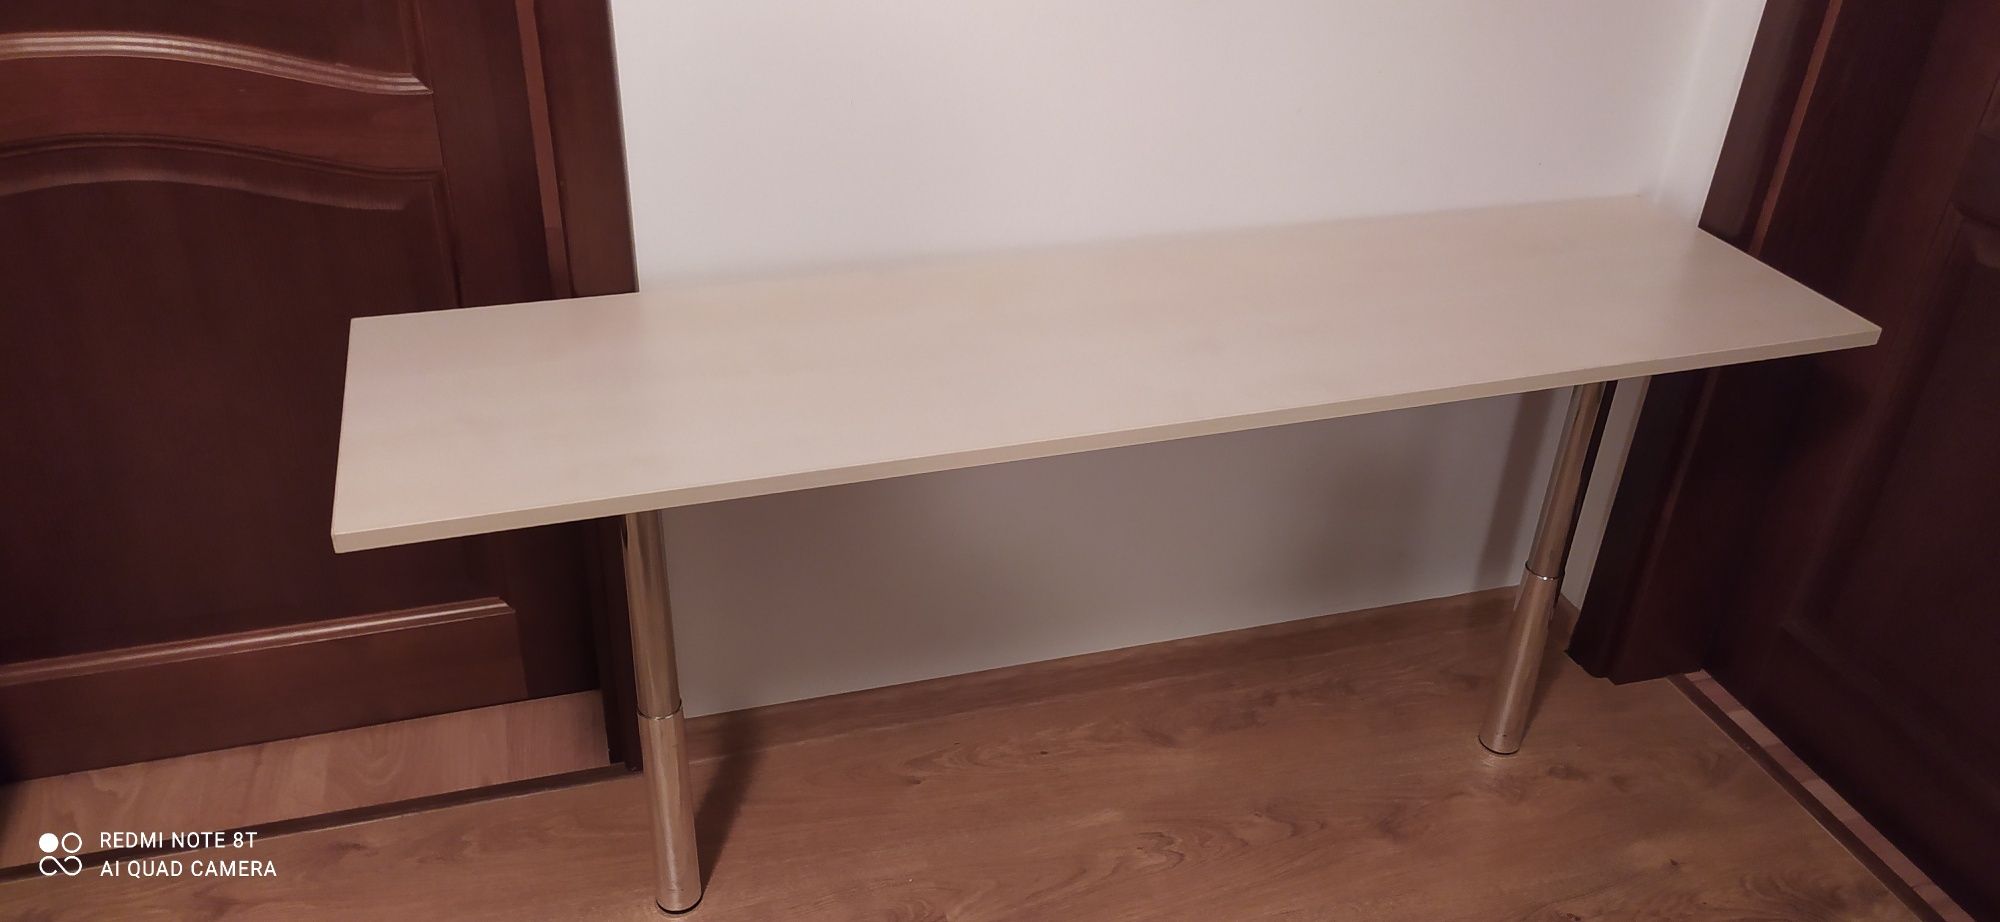 Stół ława  biurko długość 180cm